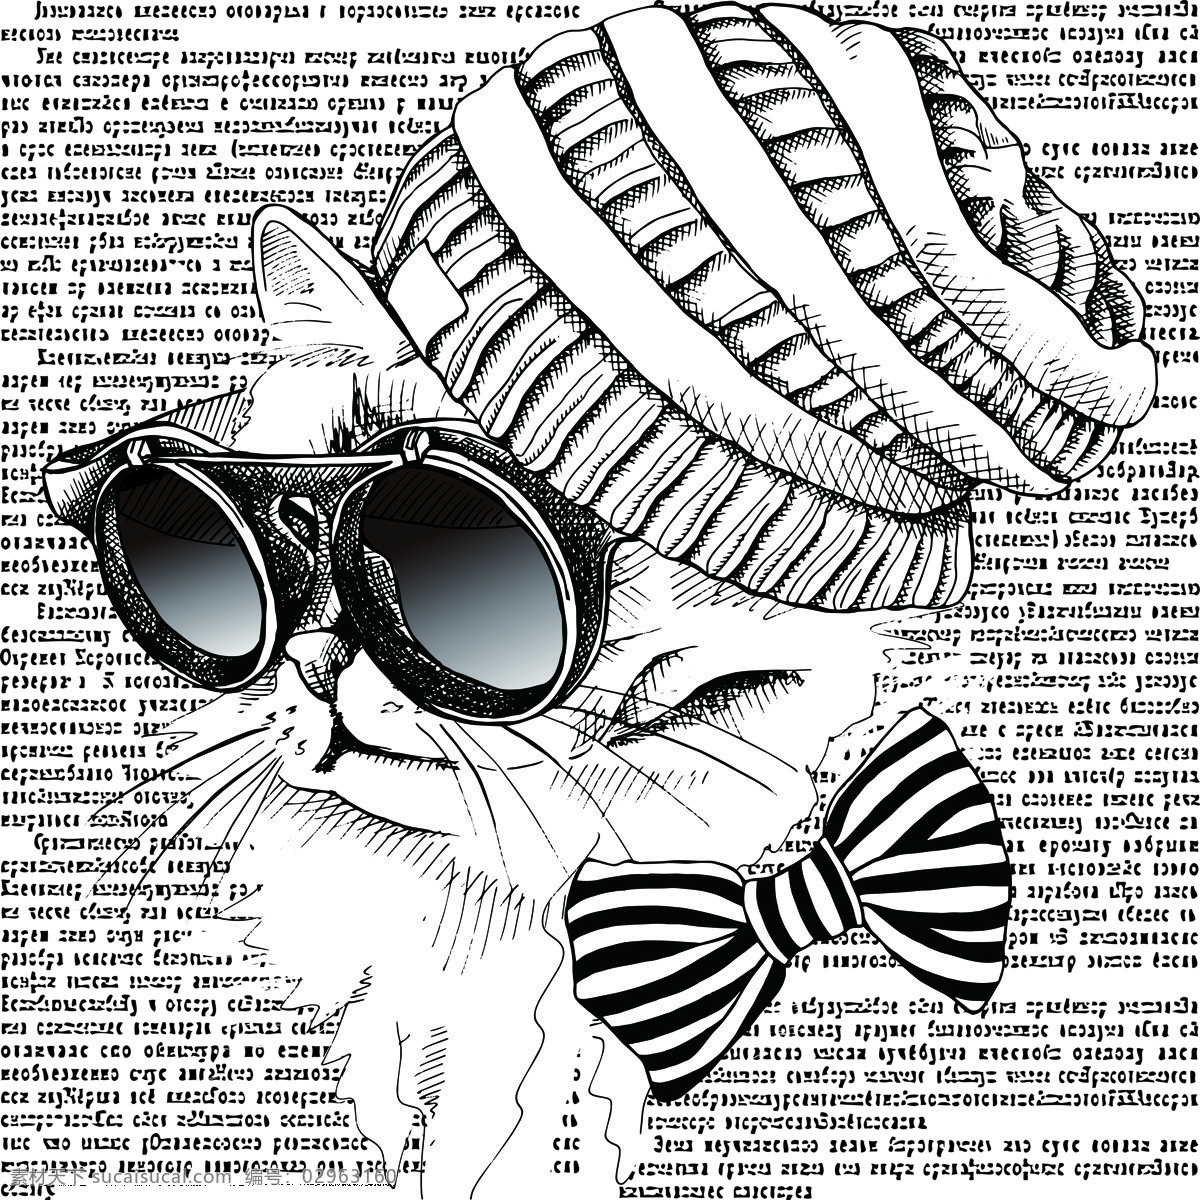 戴眼镜的猫猫 眼镜 帽子 领结 猫 黑白 报纸素材 环境设计 无框画